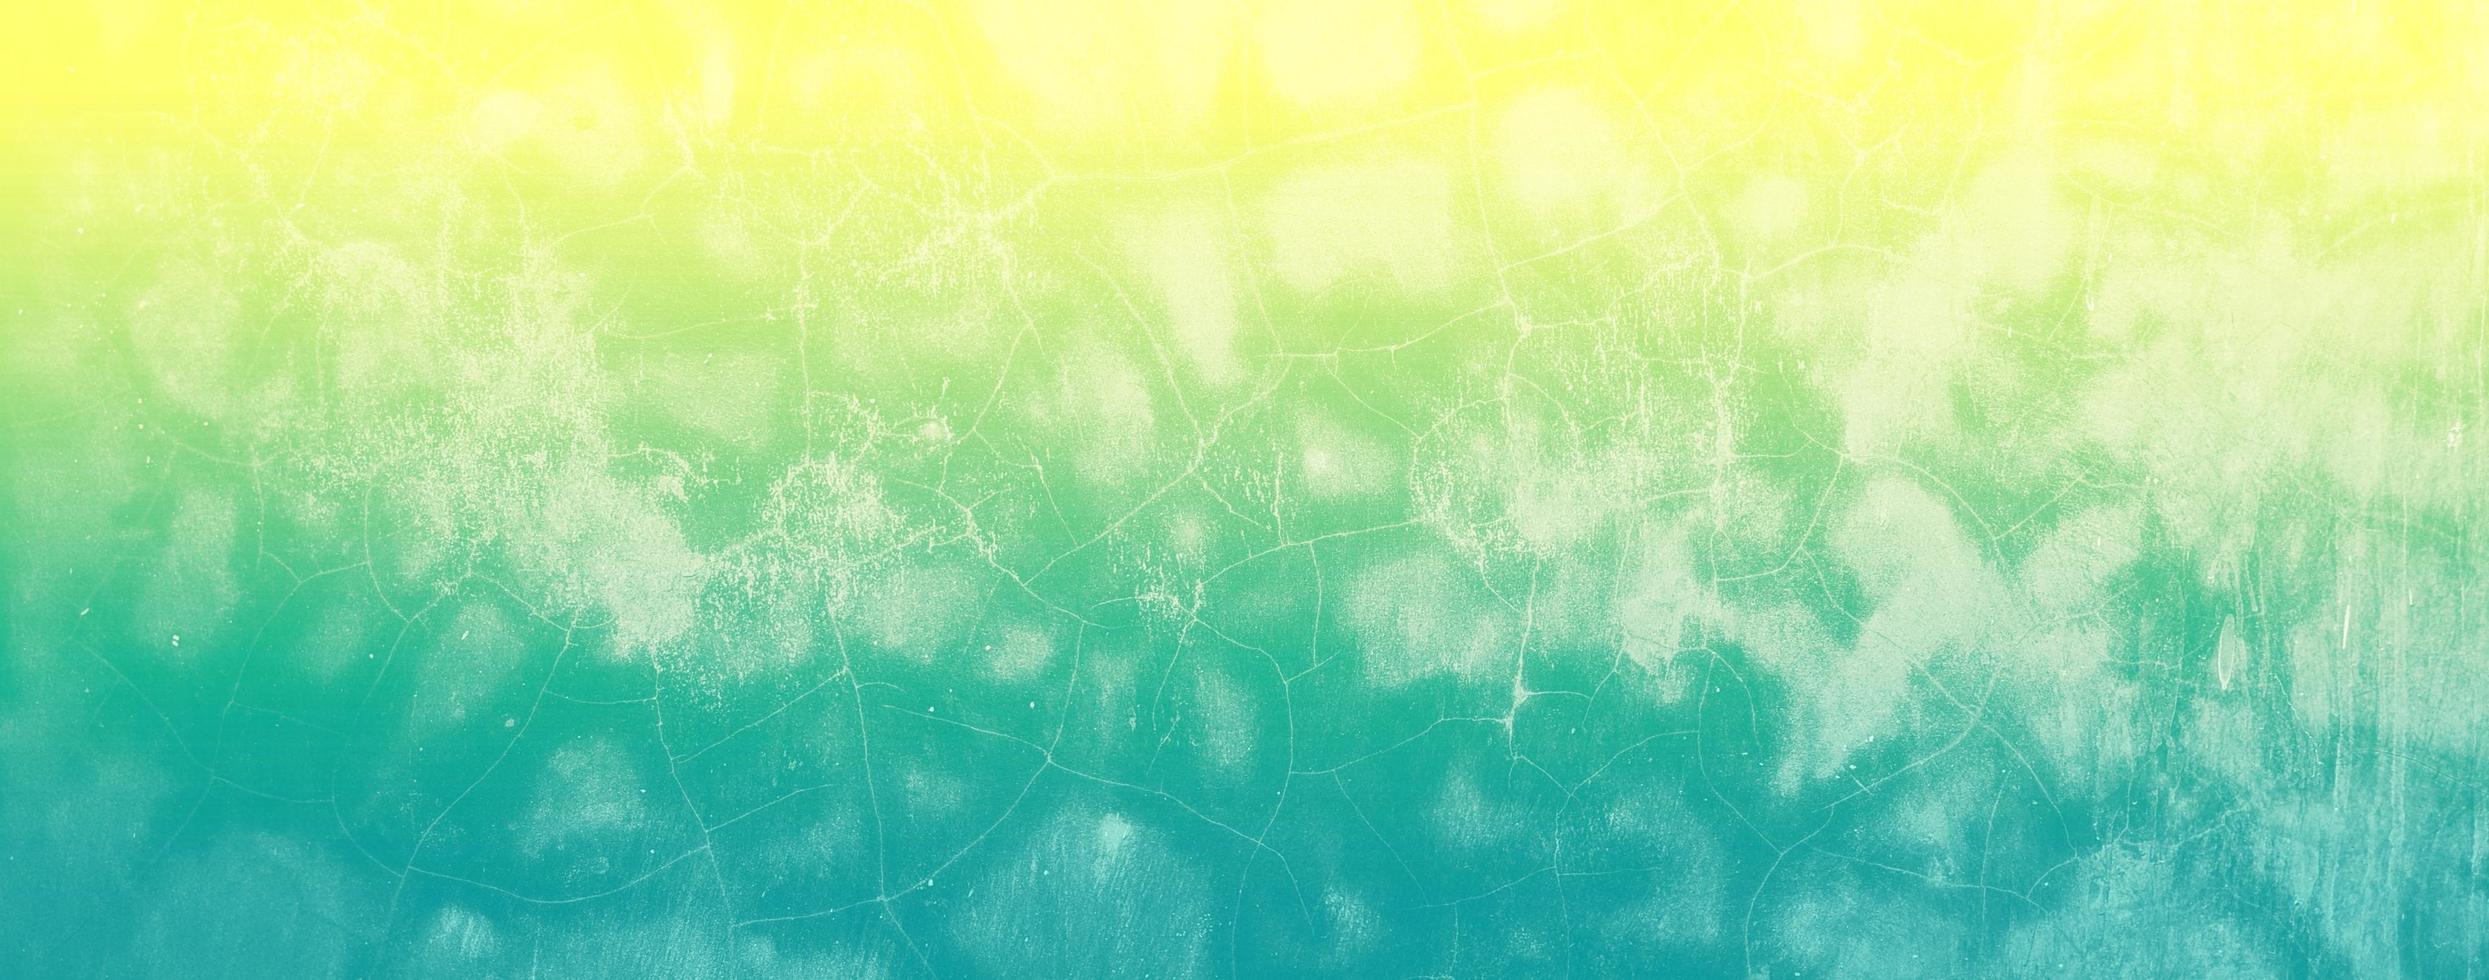 fond de béton de texture abstraite peint avec une couleur pastel dégradée photo